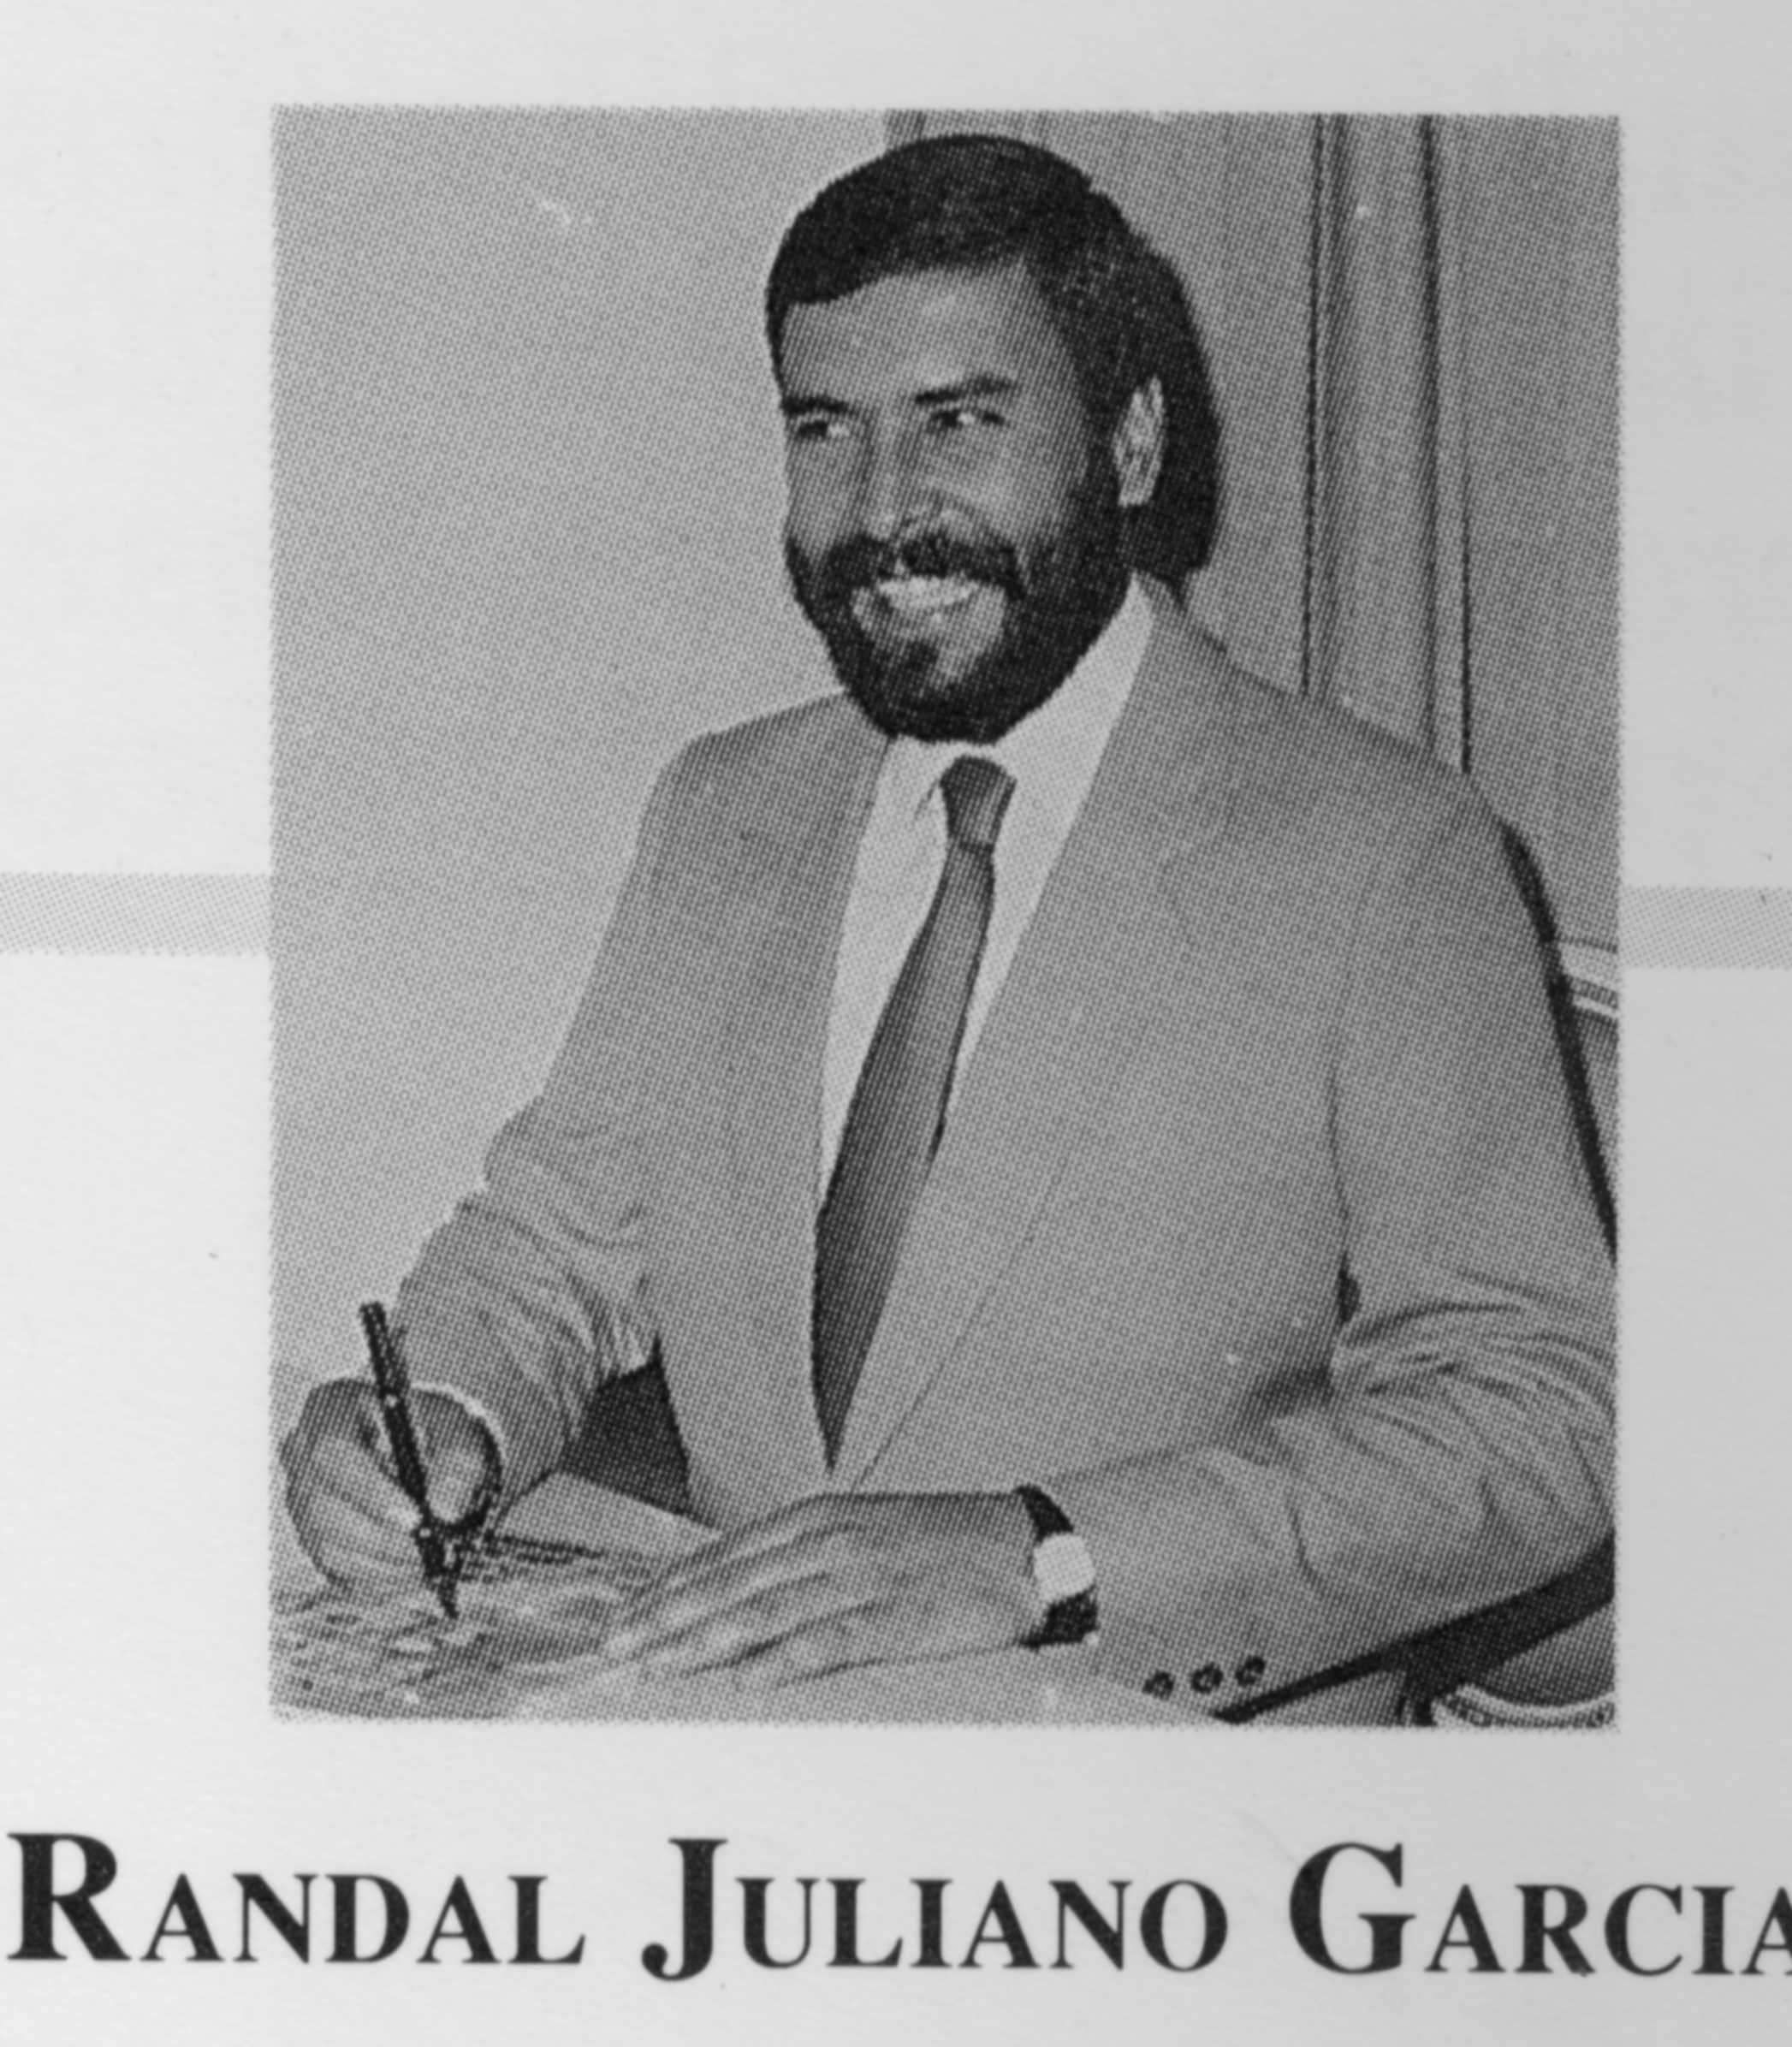 Randal Juliano Garcia